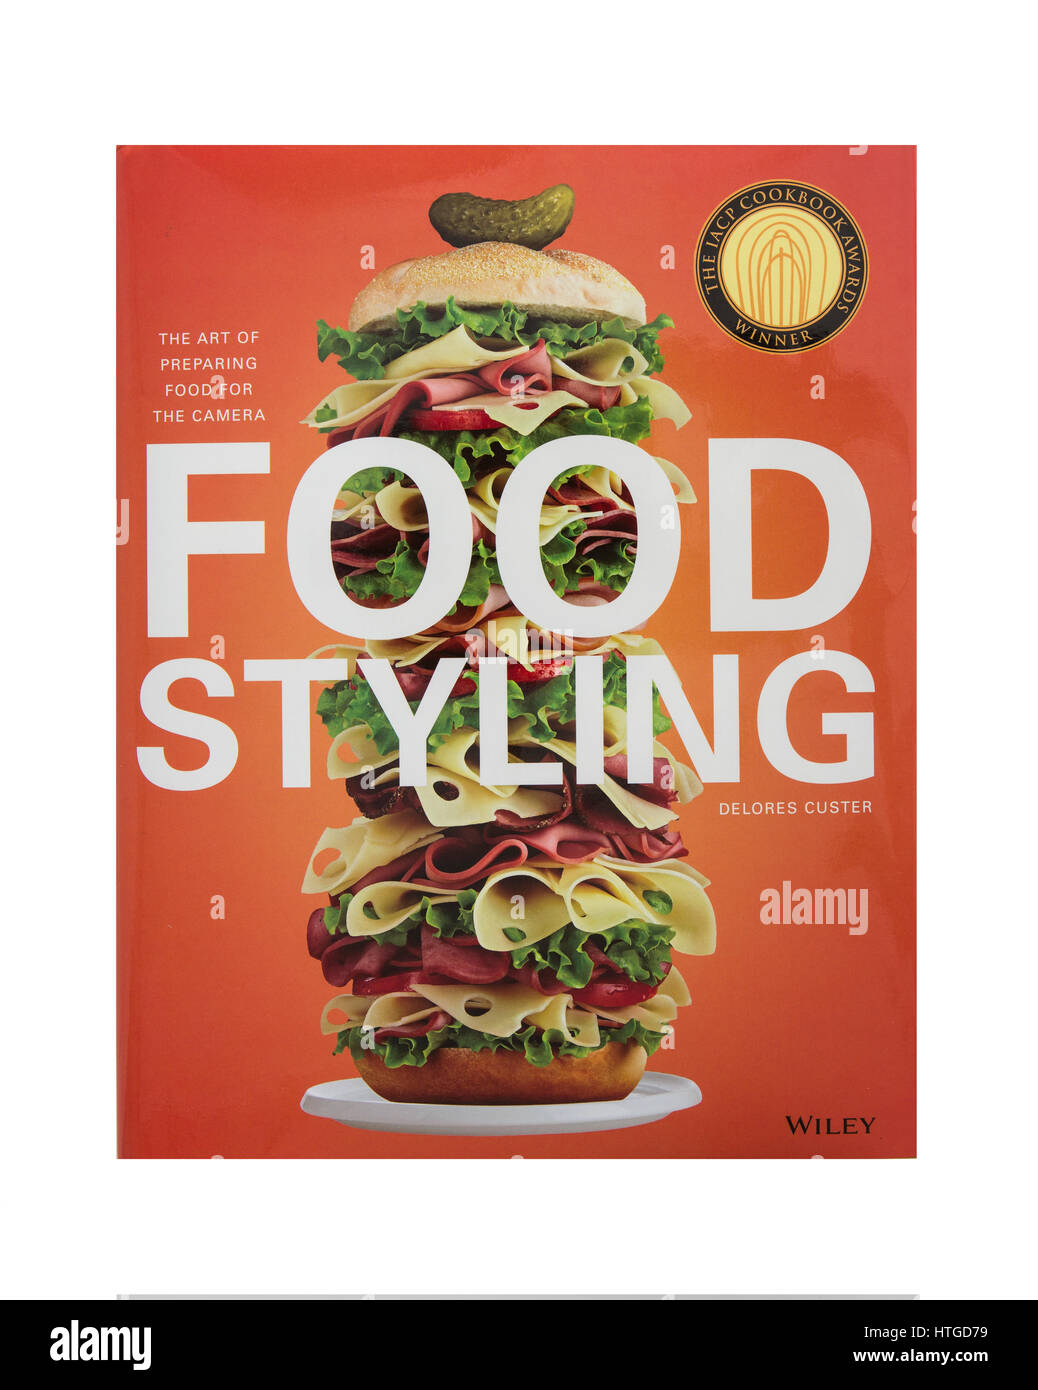 Food Styling von Delores Custer, die Kunst des prepairing Essen für die Kamera bei Wiley erschienen Stockfoto